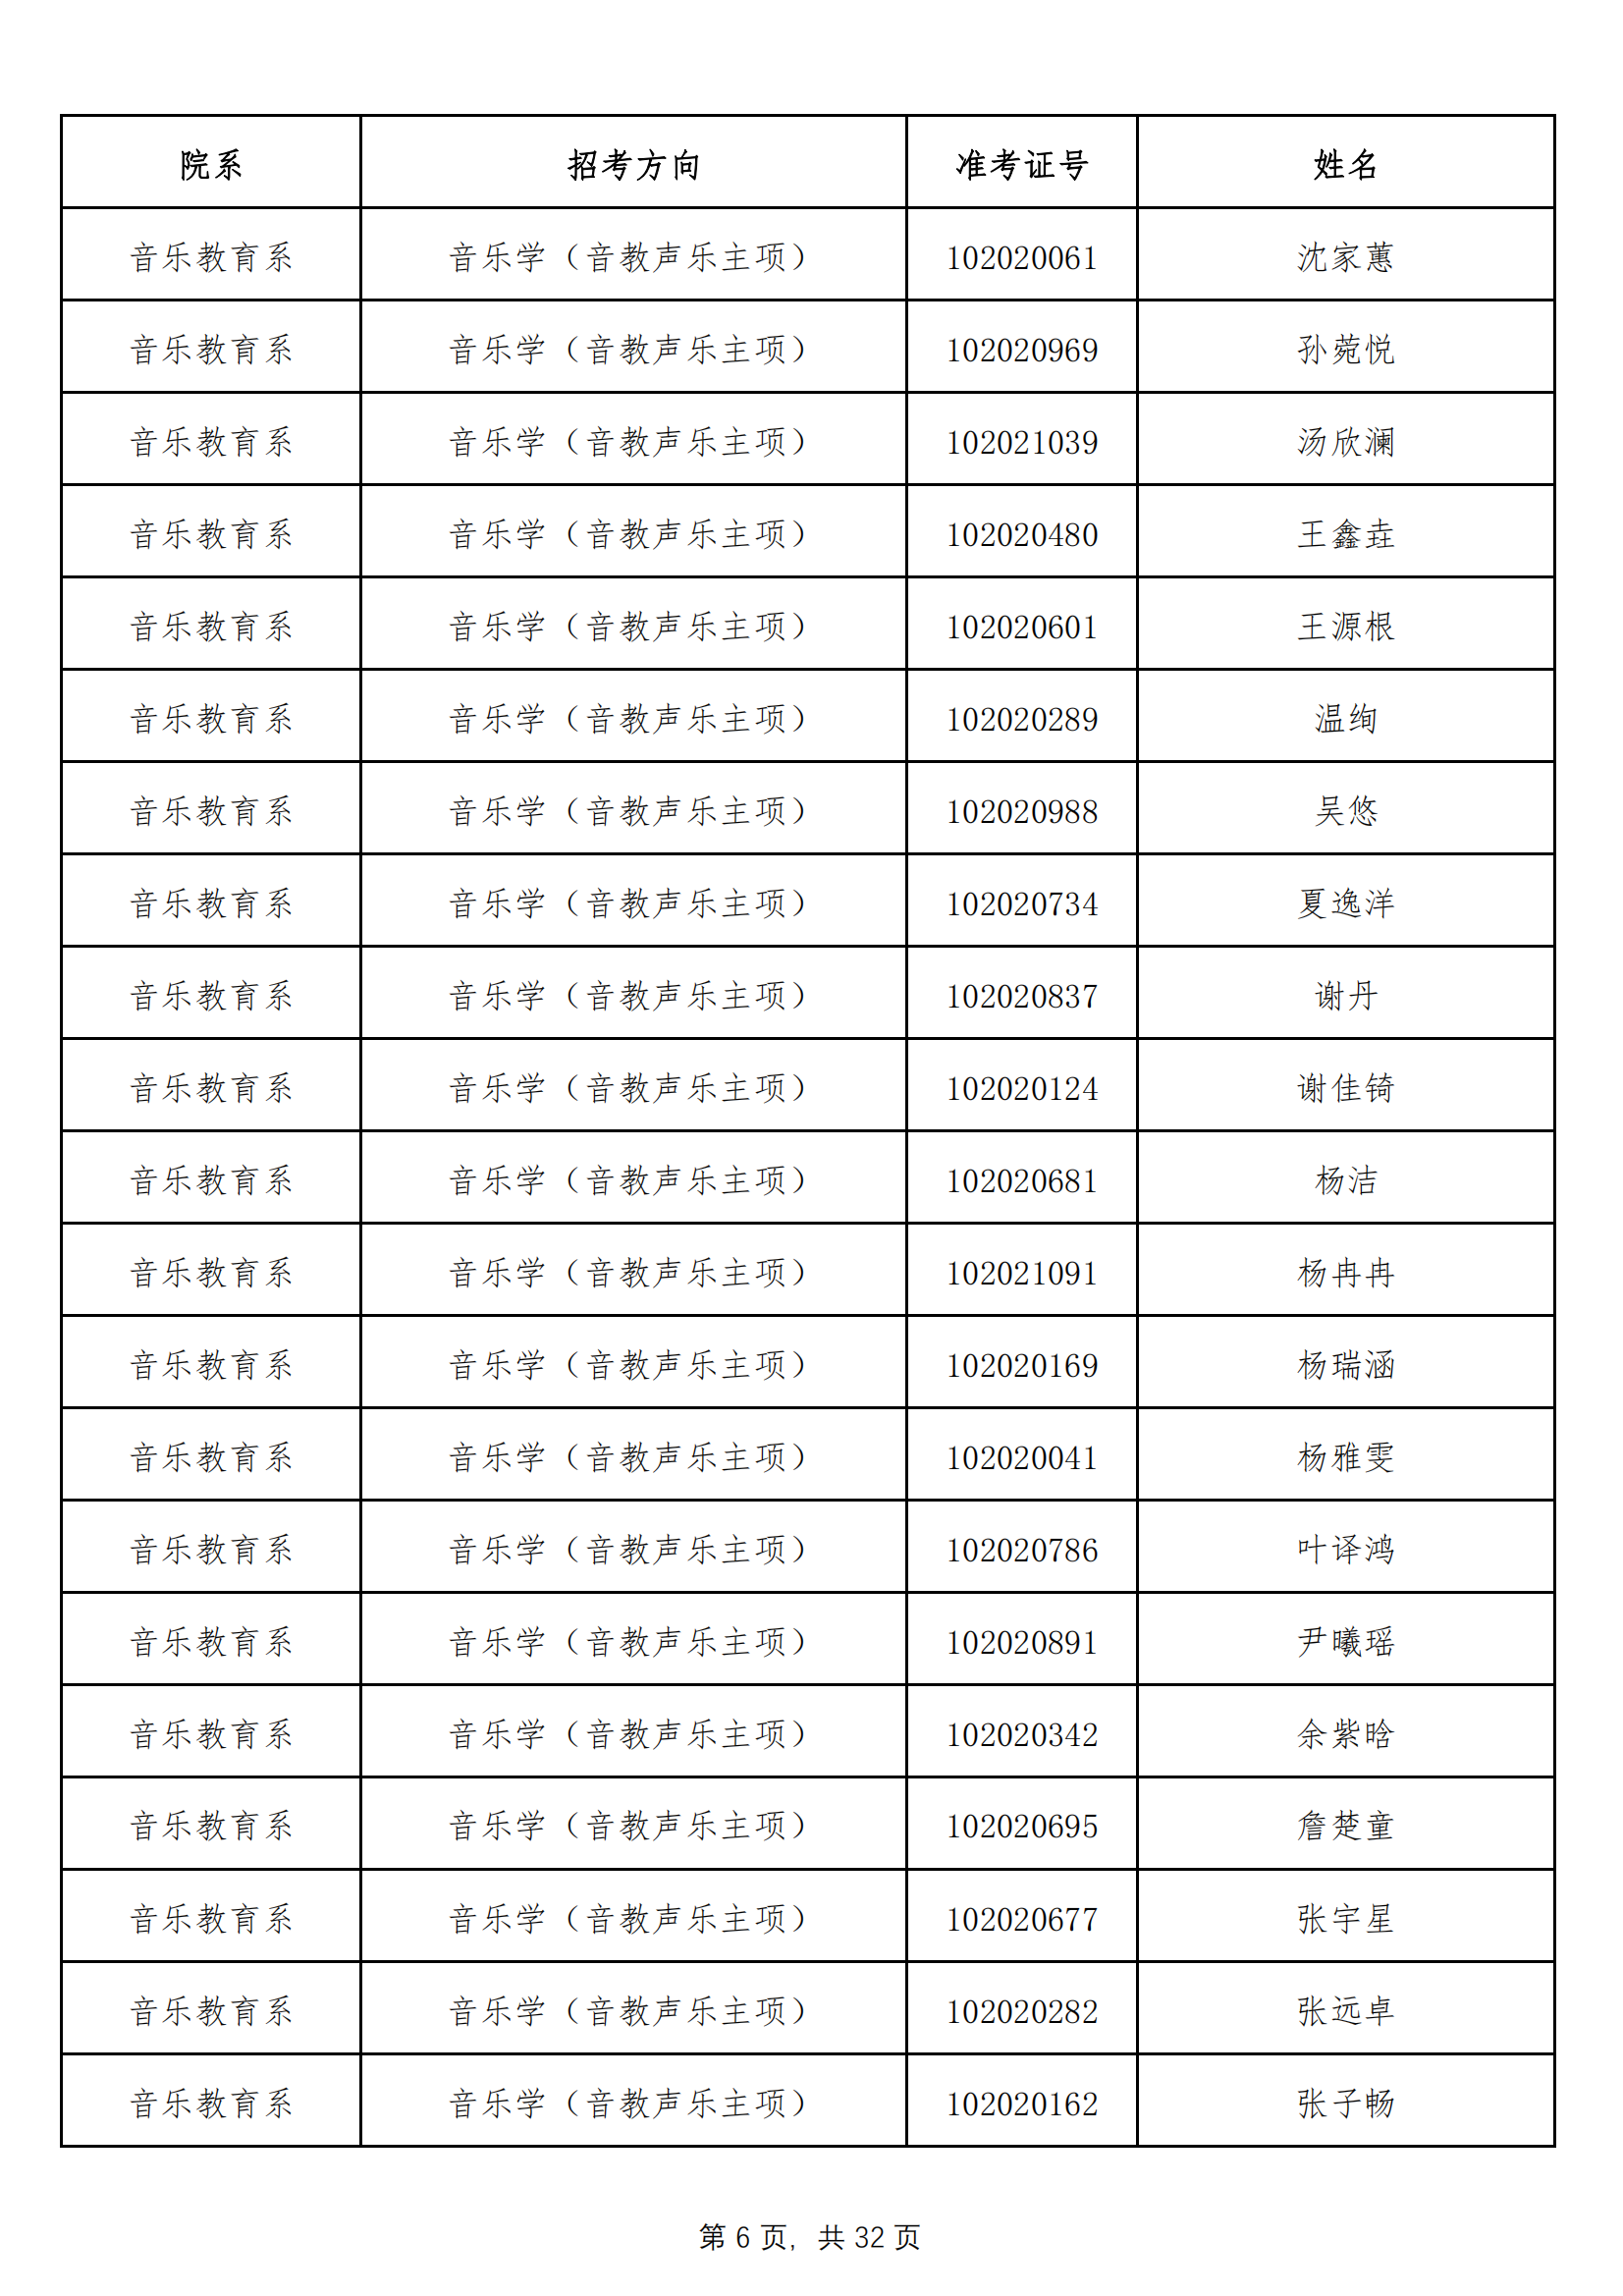 天津音乐学院2022年本科招生拟录取名单 （除上海考生外）_05.png